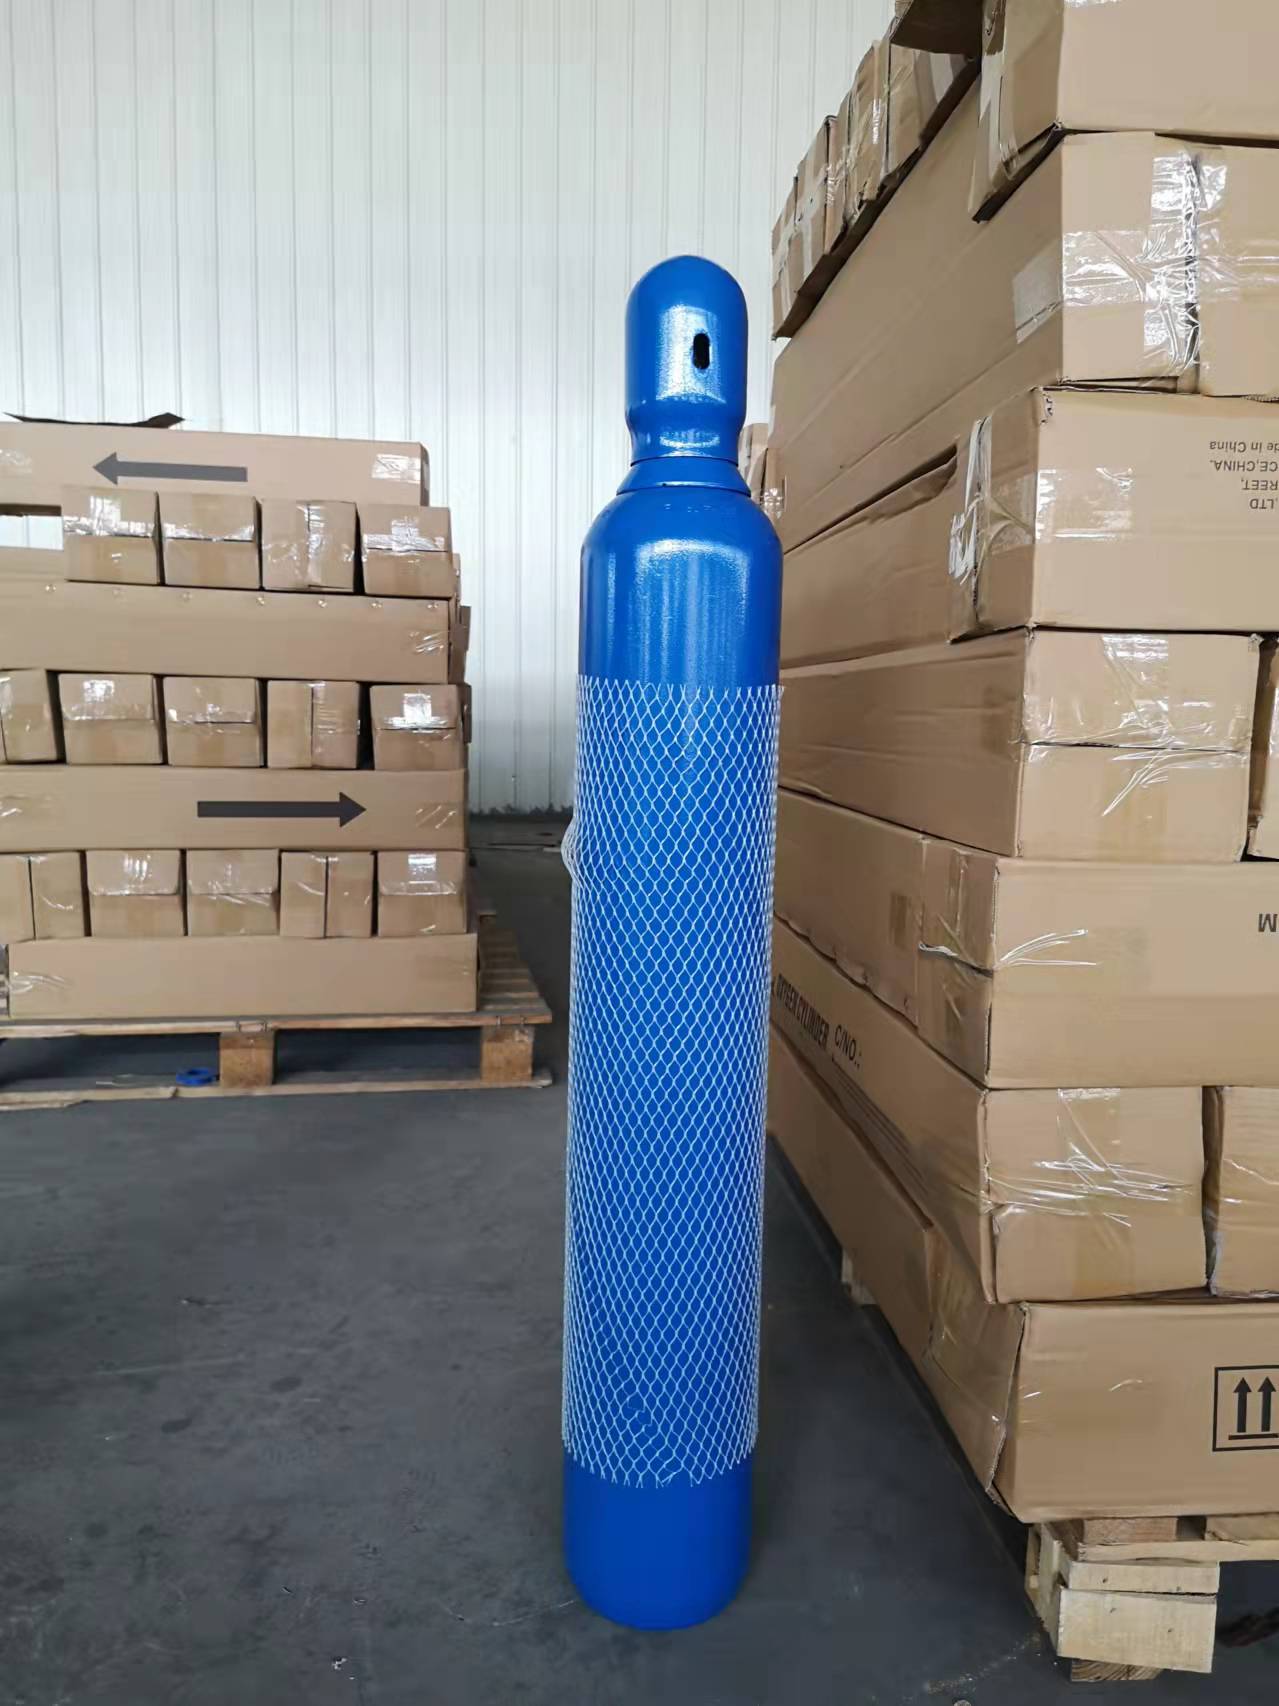 氧气瓶10升 大同家用氧气瓶 山东广承压力容器有限公司